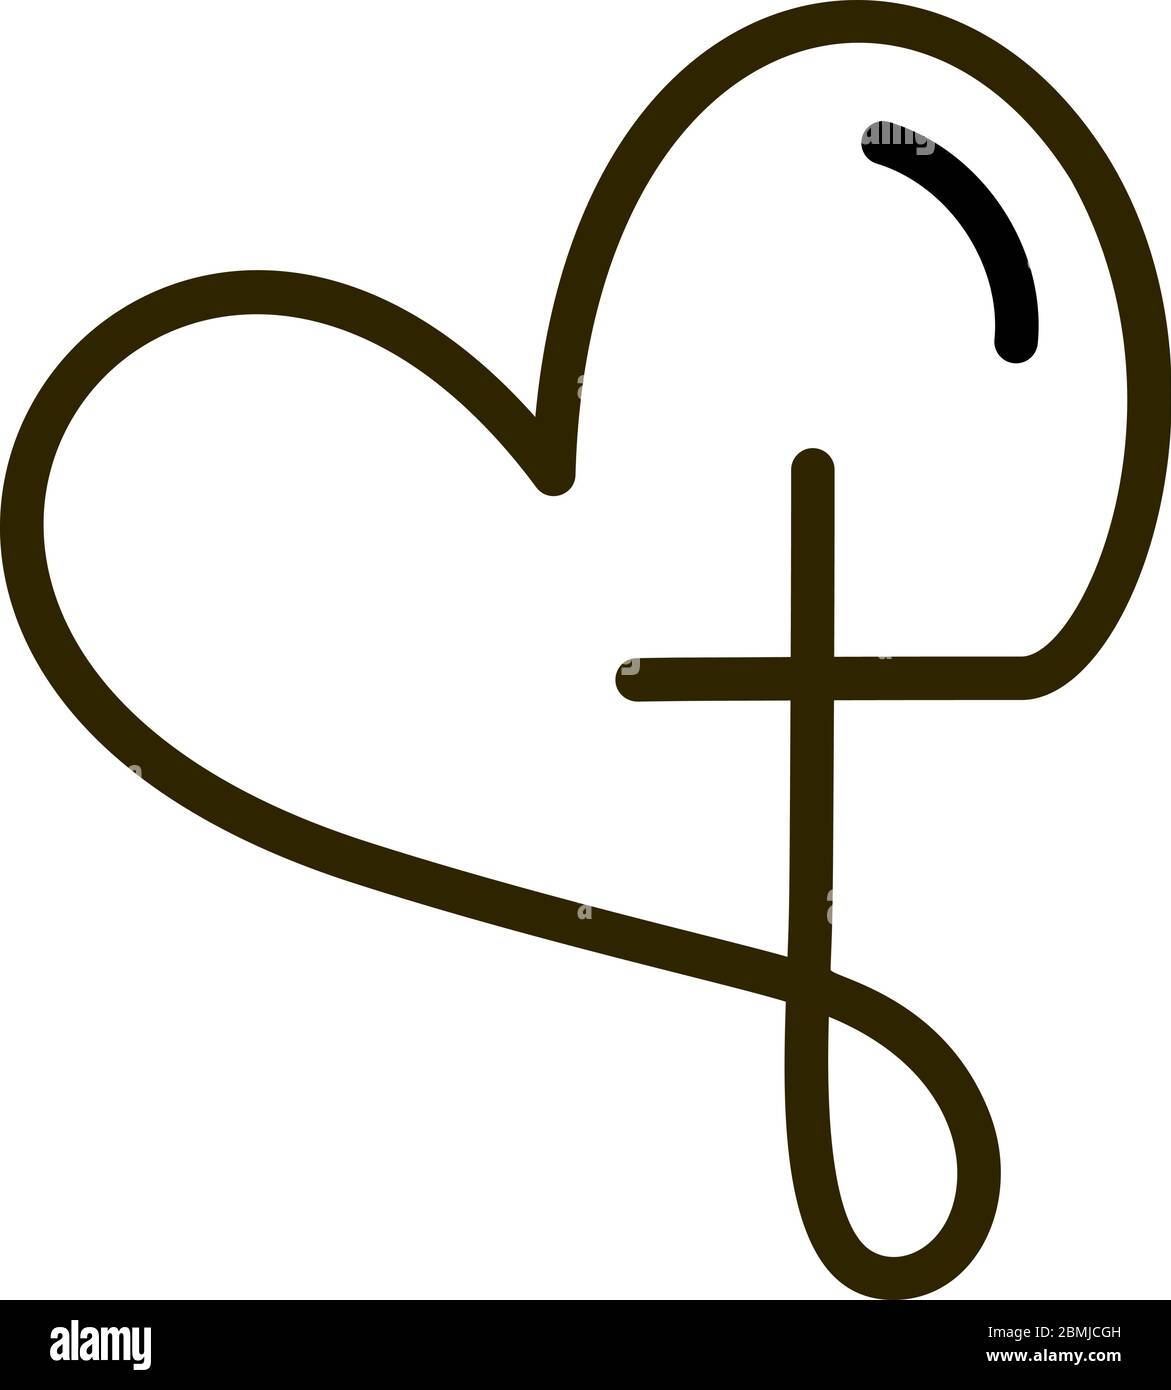 Croce religiosa astratta e icona del cuore. Logo Christian Love. Illustrazione del vettore monolina Illustrazione Vettoriale